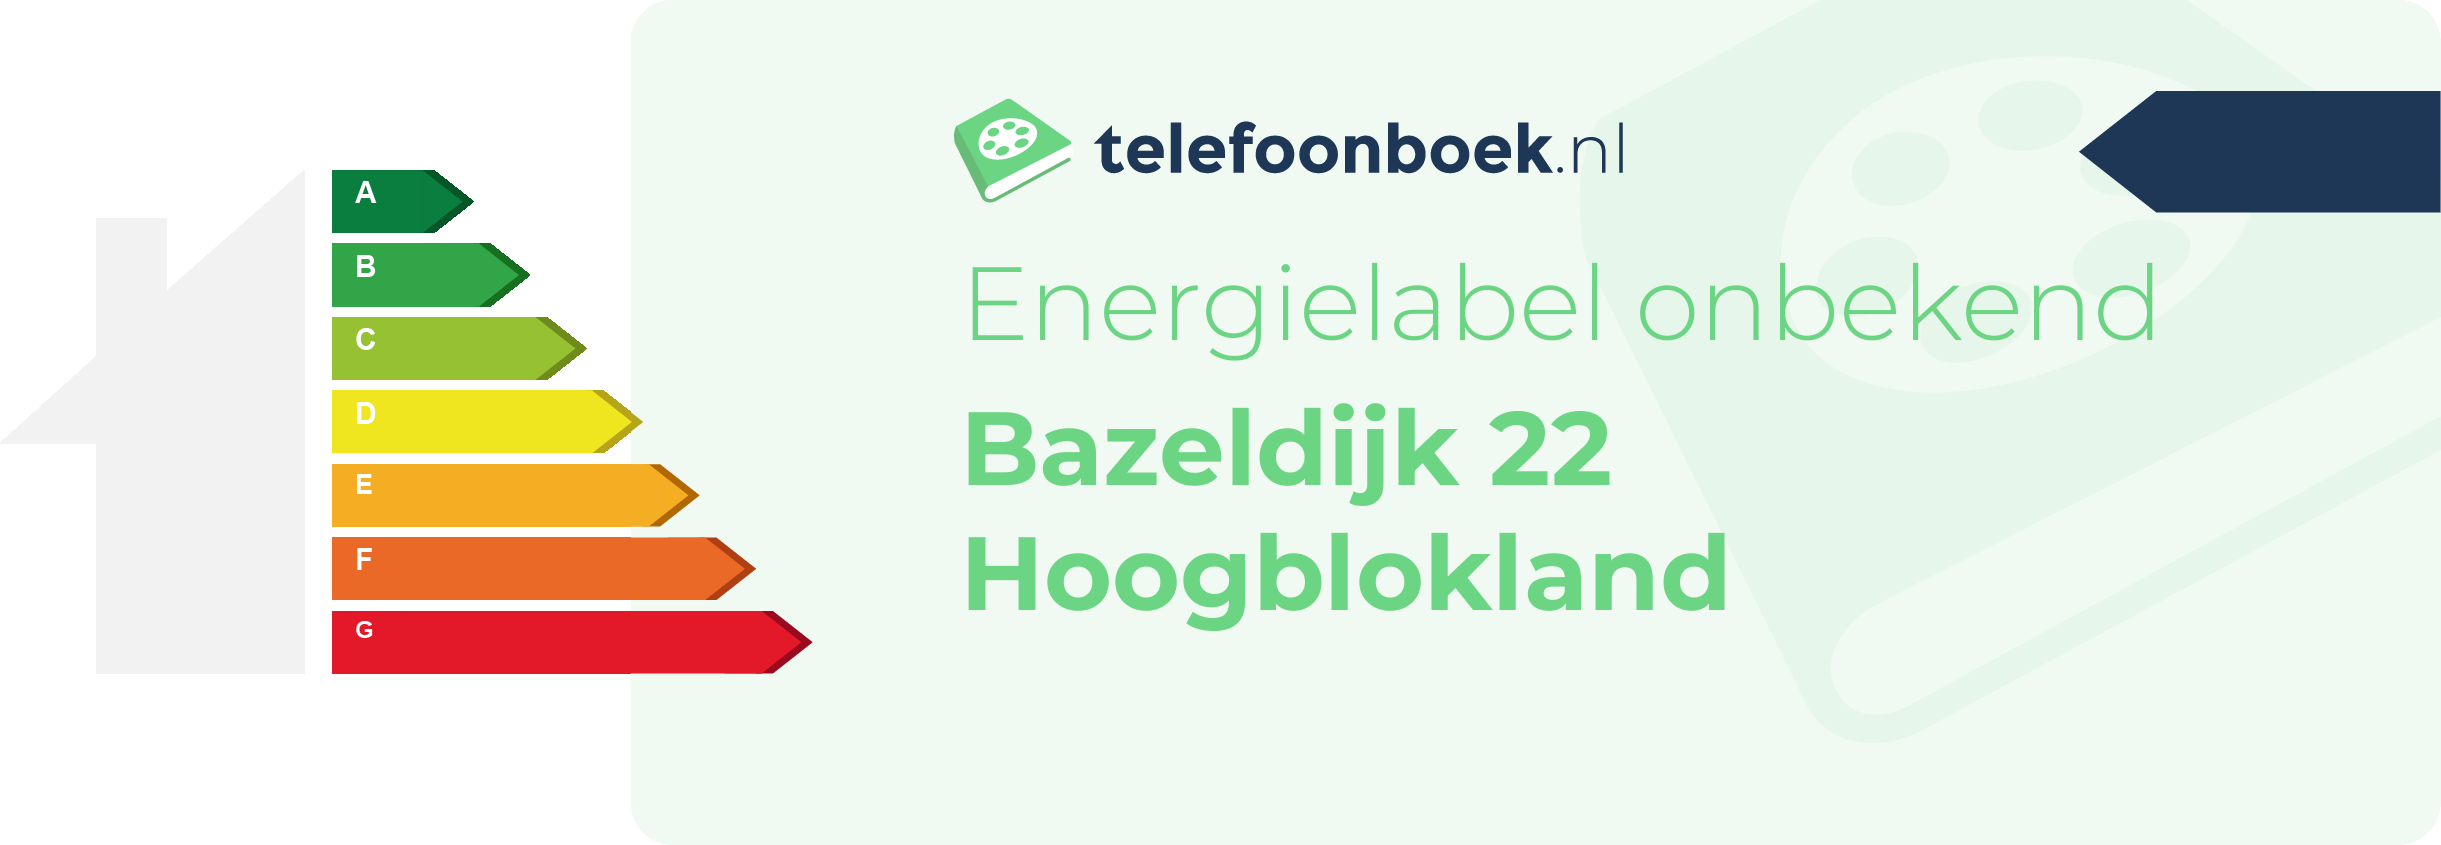 Energielabel Bazeldijk 22 Hoogblokland